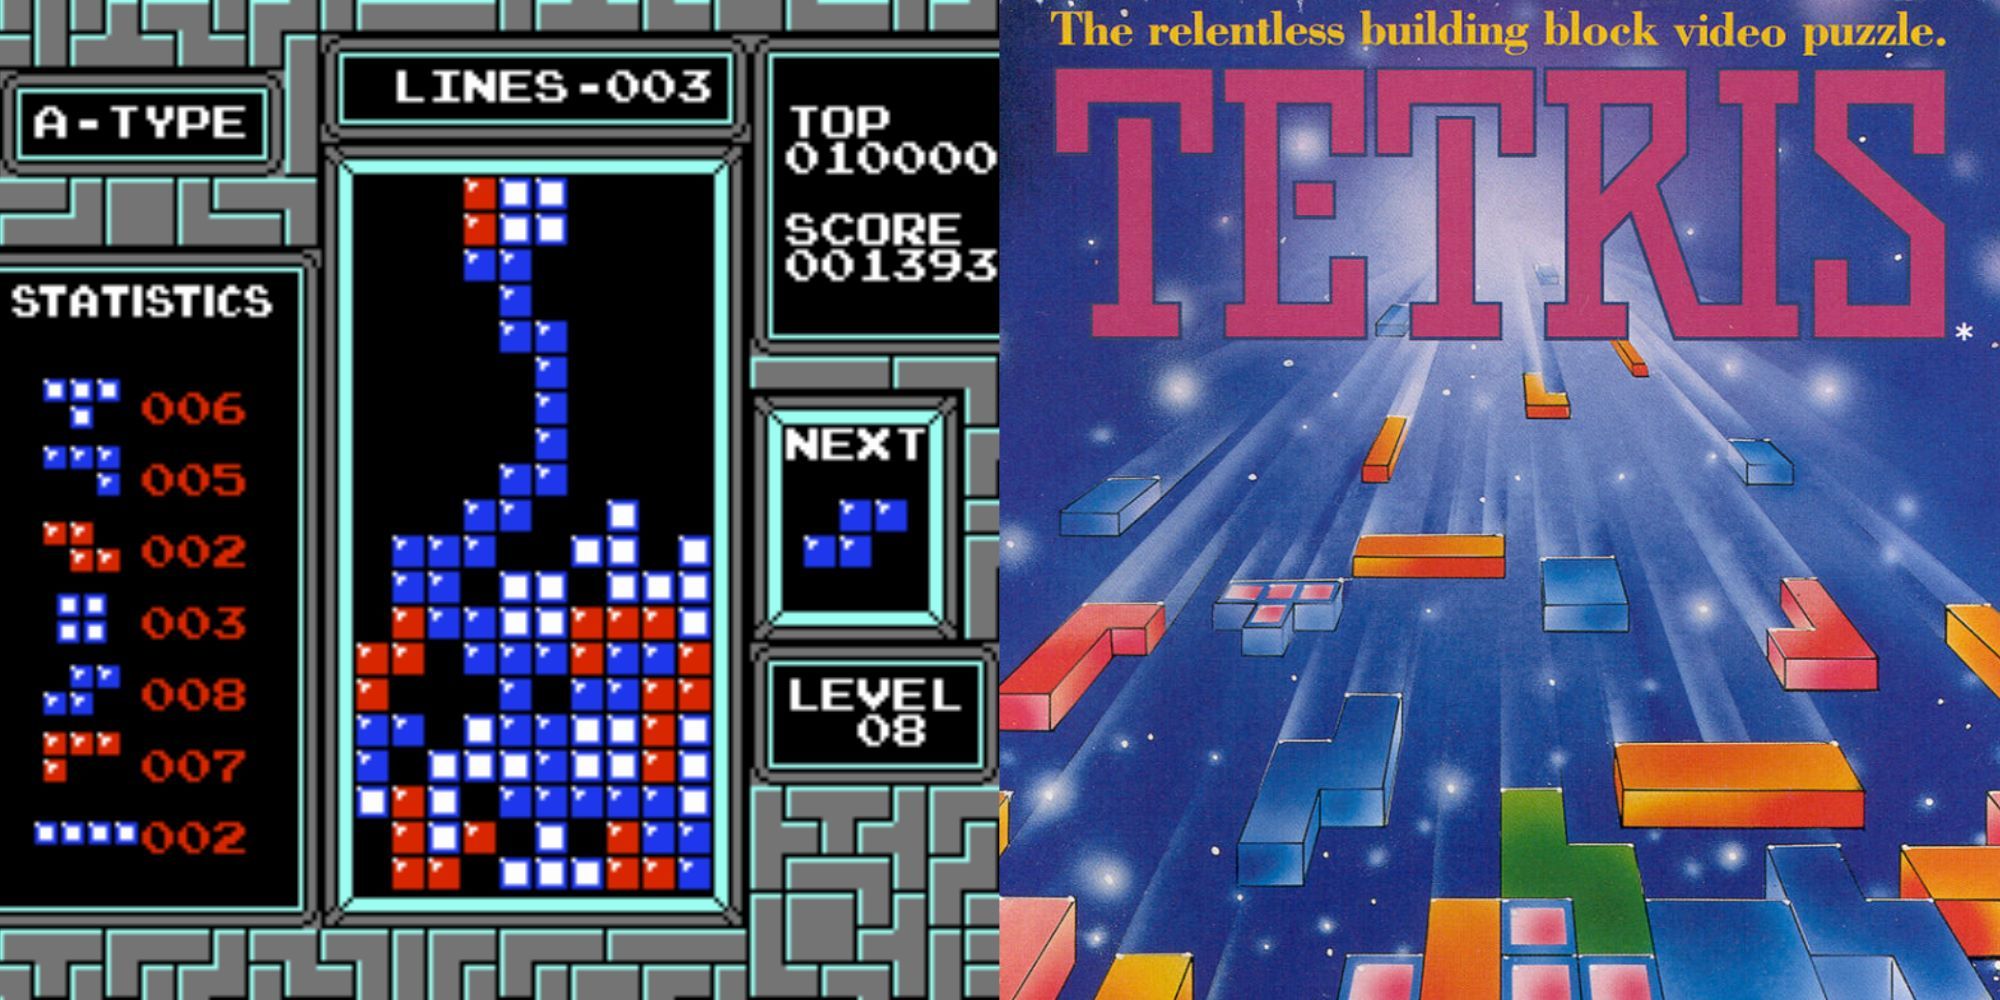 Tetris World Championship Game Sees HighestScoring Game of Classic Tetris